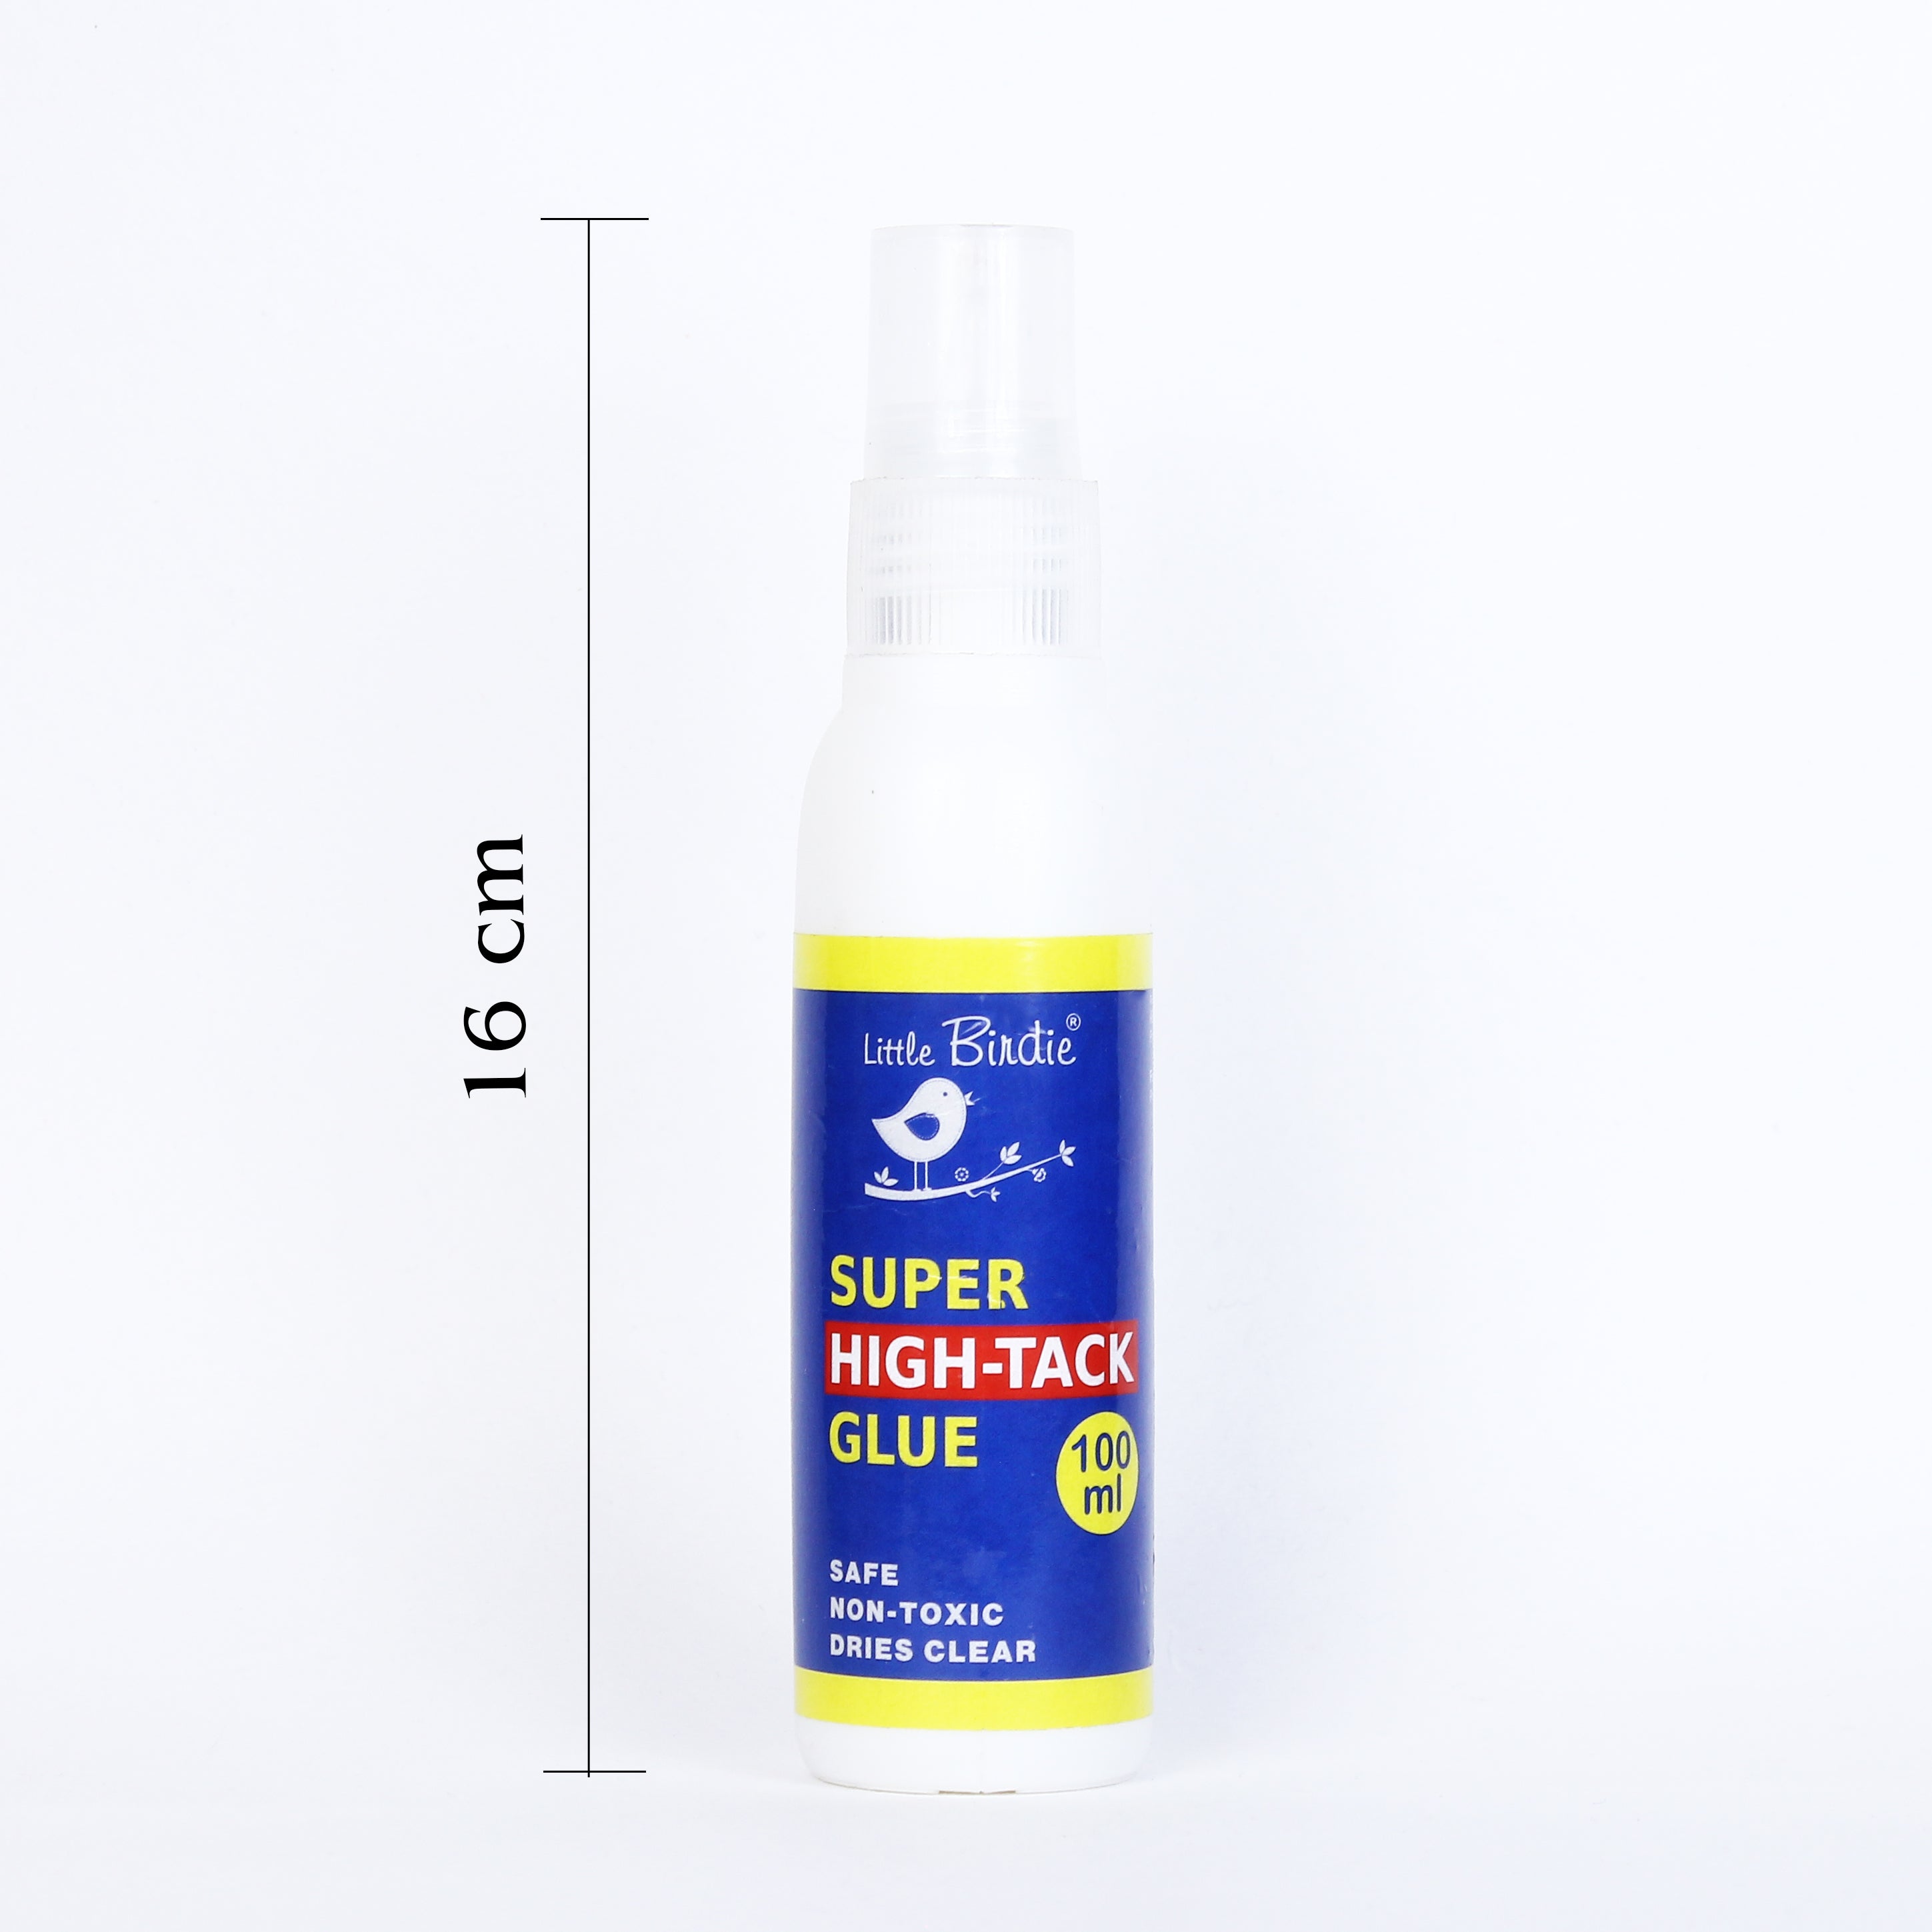 Super Hightack Glue 100ml Squeeze Bottle